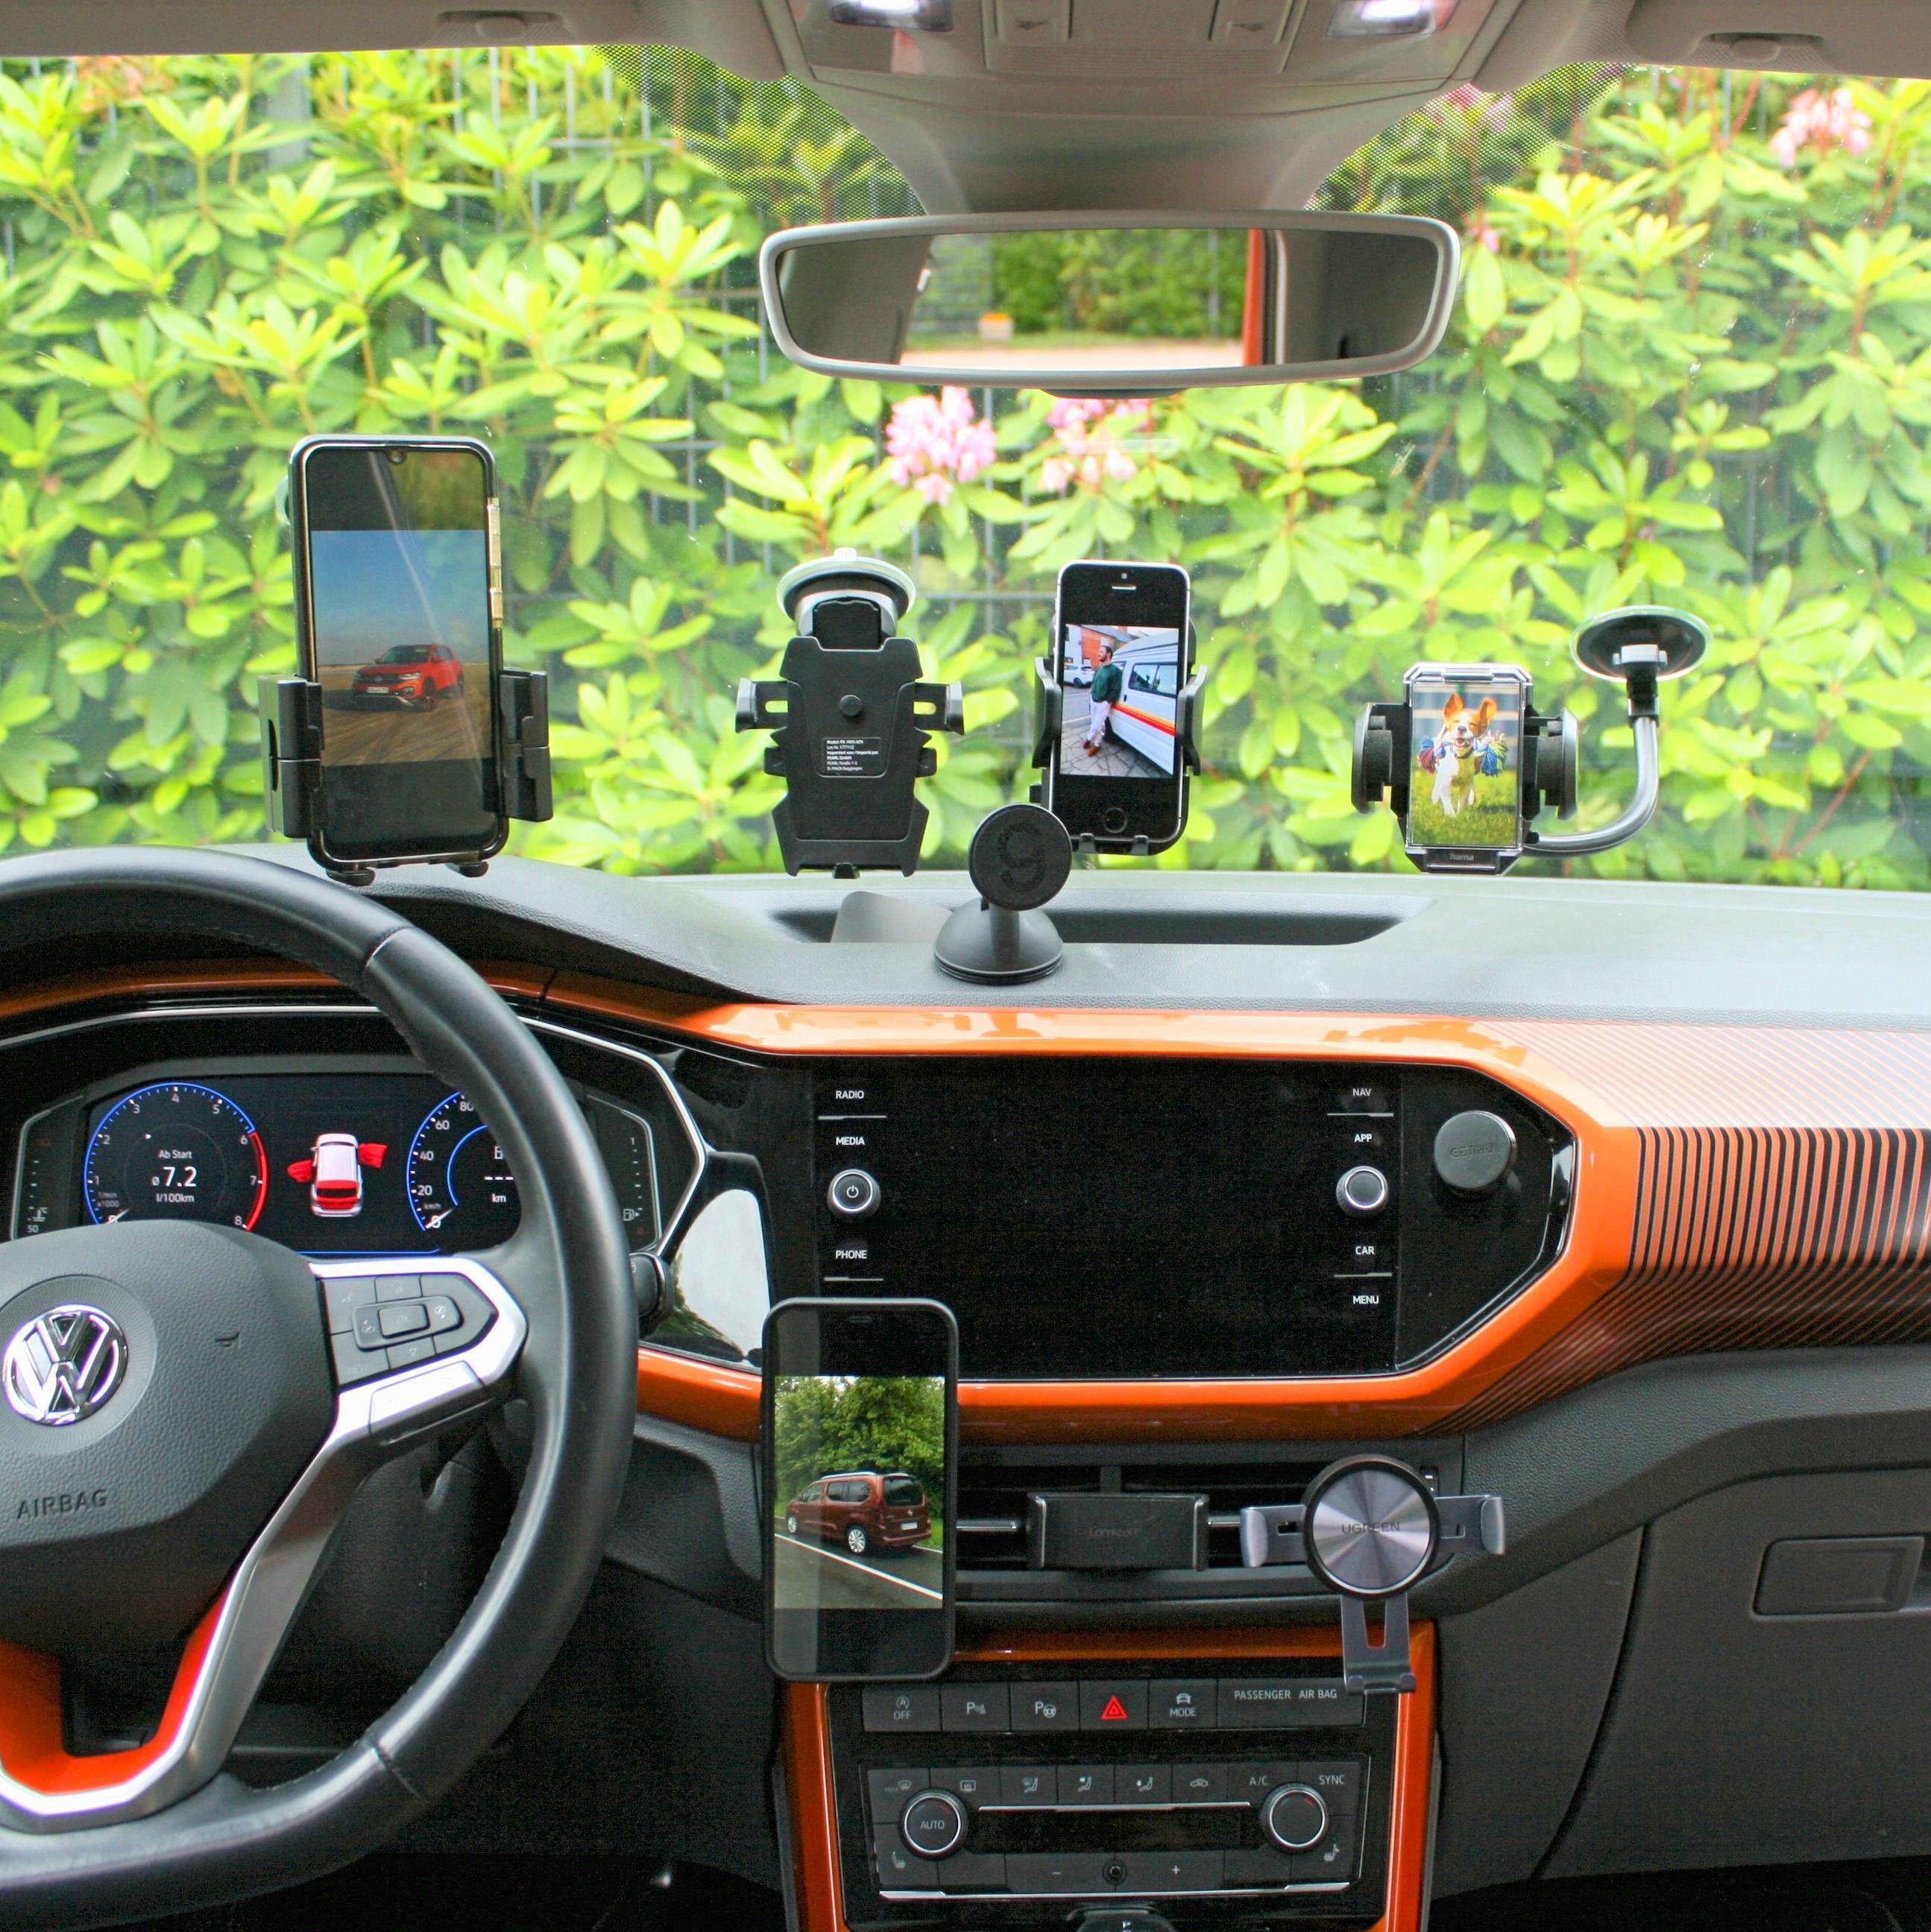 Auto Handyhalterung mit Magnet im Test - Die perfekte Halterung?